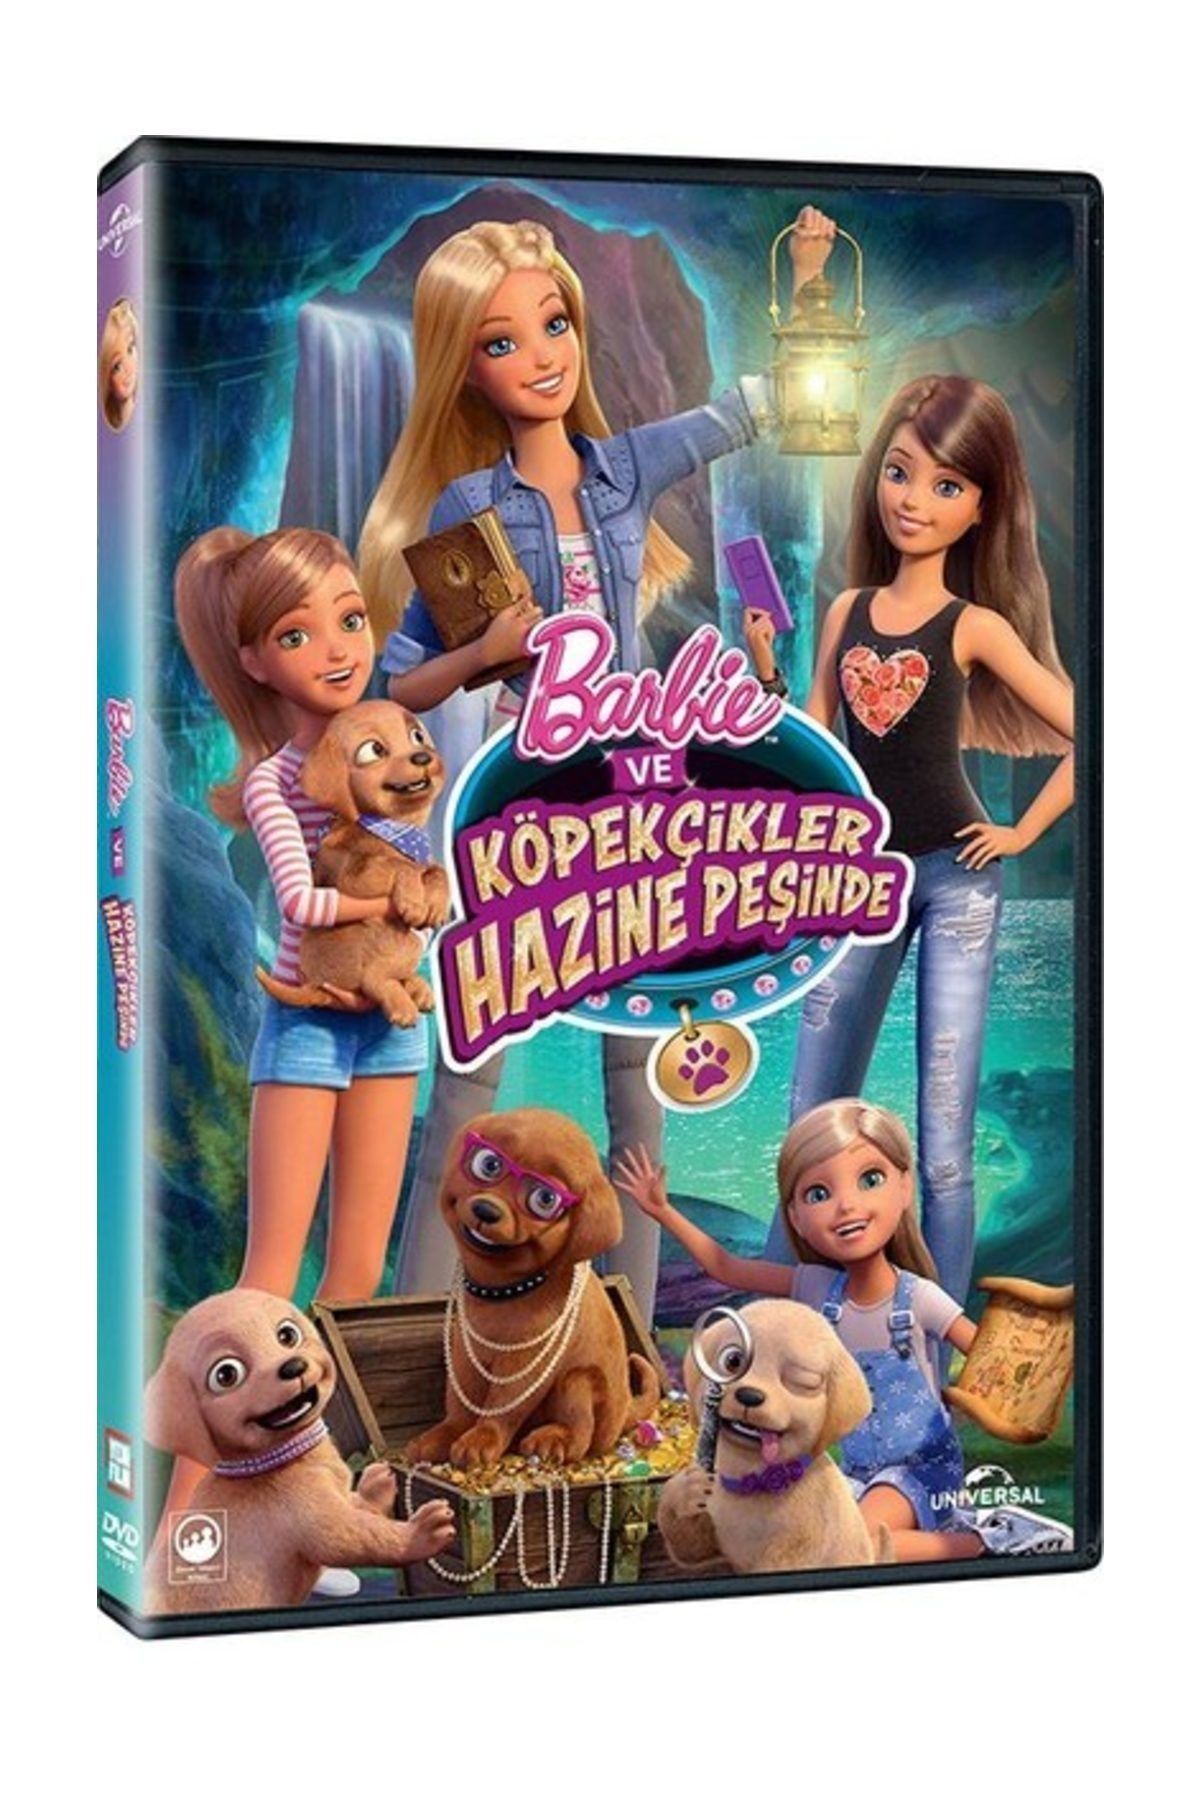 Pal DVD-Barbie ve Köpekçikler hazine peşinde